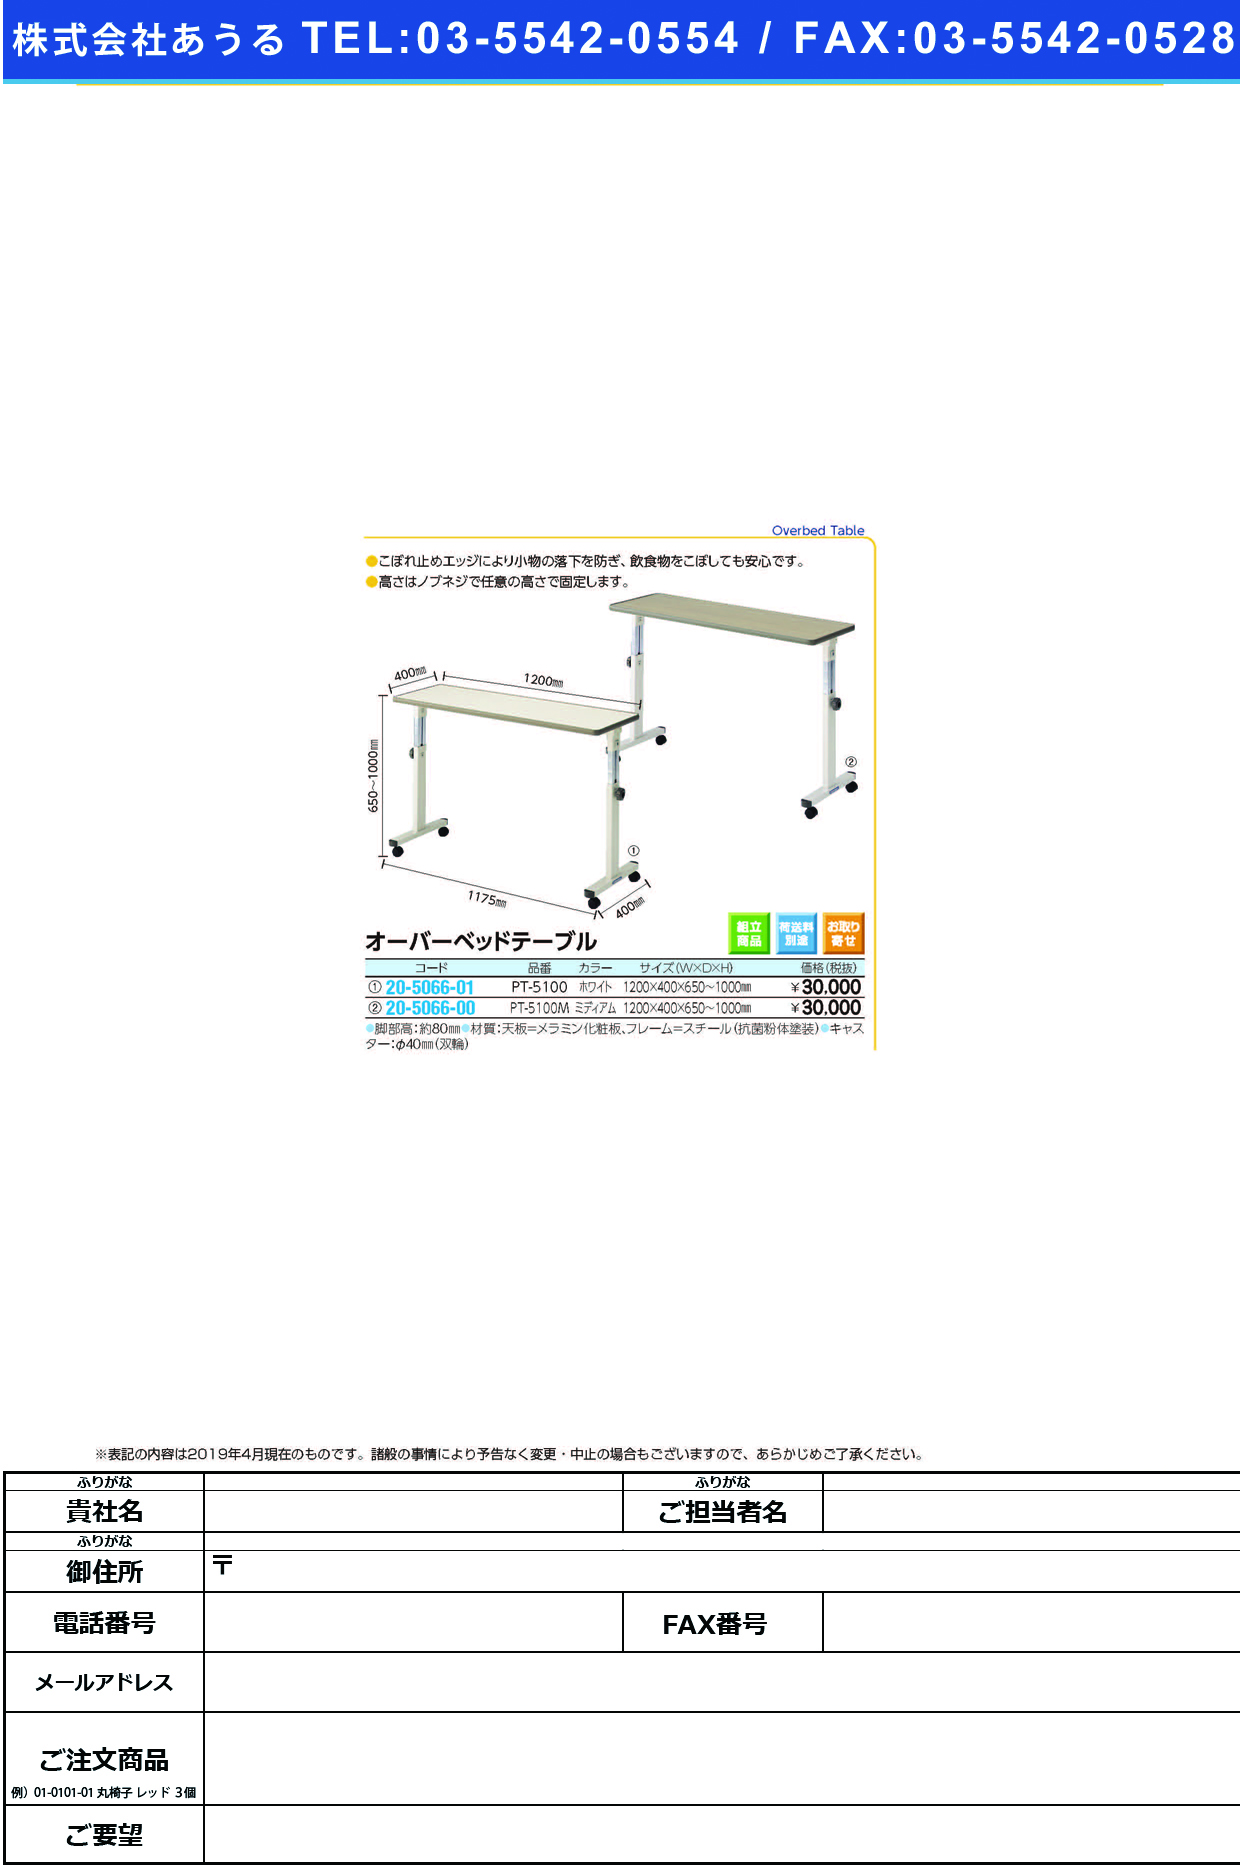 (20-5066-01)オーバーベッドテーブル PT-5100(ﾎﾜｲﾄ) ｵｰﾊﾞｰﾍﾞｯﾄﾞﾃｰﾌﾞﾙ(シーホネンス)【1台単位】【2019年カタログ商品】